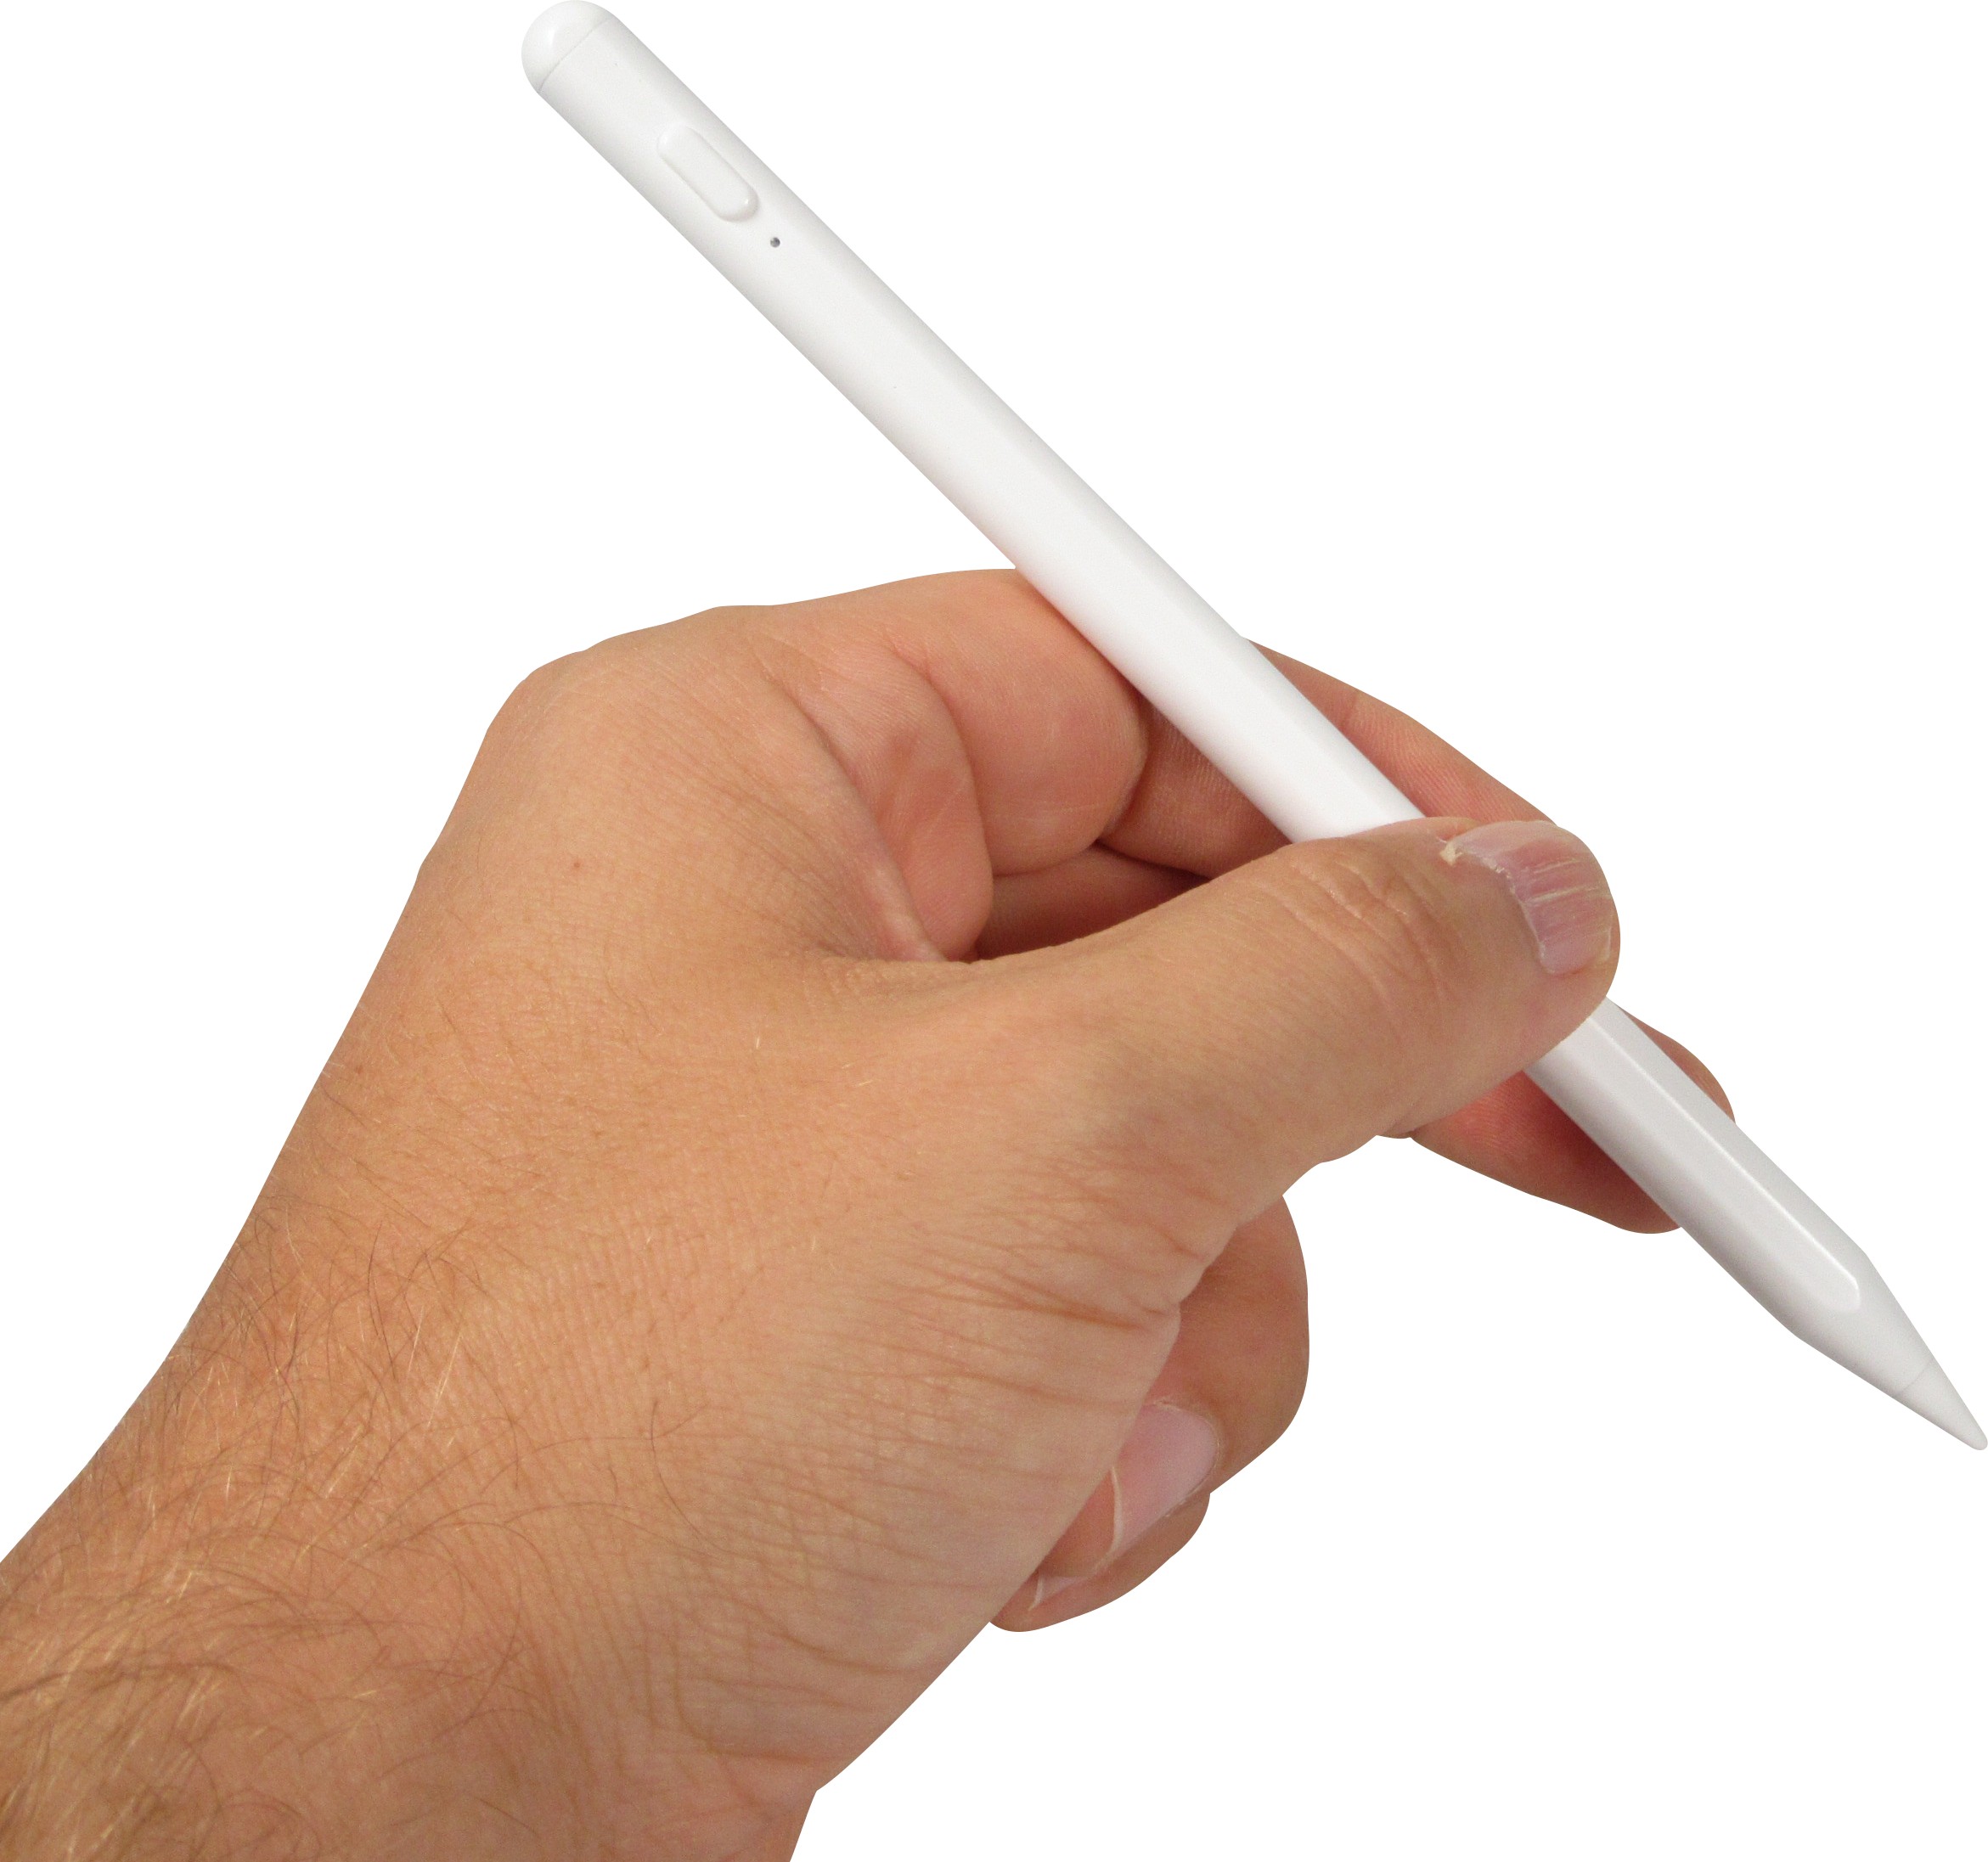 2 en 1 stylet stylo tactile + stylo à bille pour iPhone 6 & 6 plus / 5 et  5s et 5c, iPad Air 2 / iPad mini 1/2/3 / nouvel iPad (iPad 3) / iPad et  tout écran tactile capacitif (or)